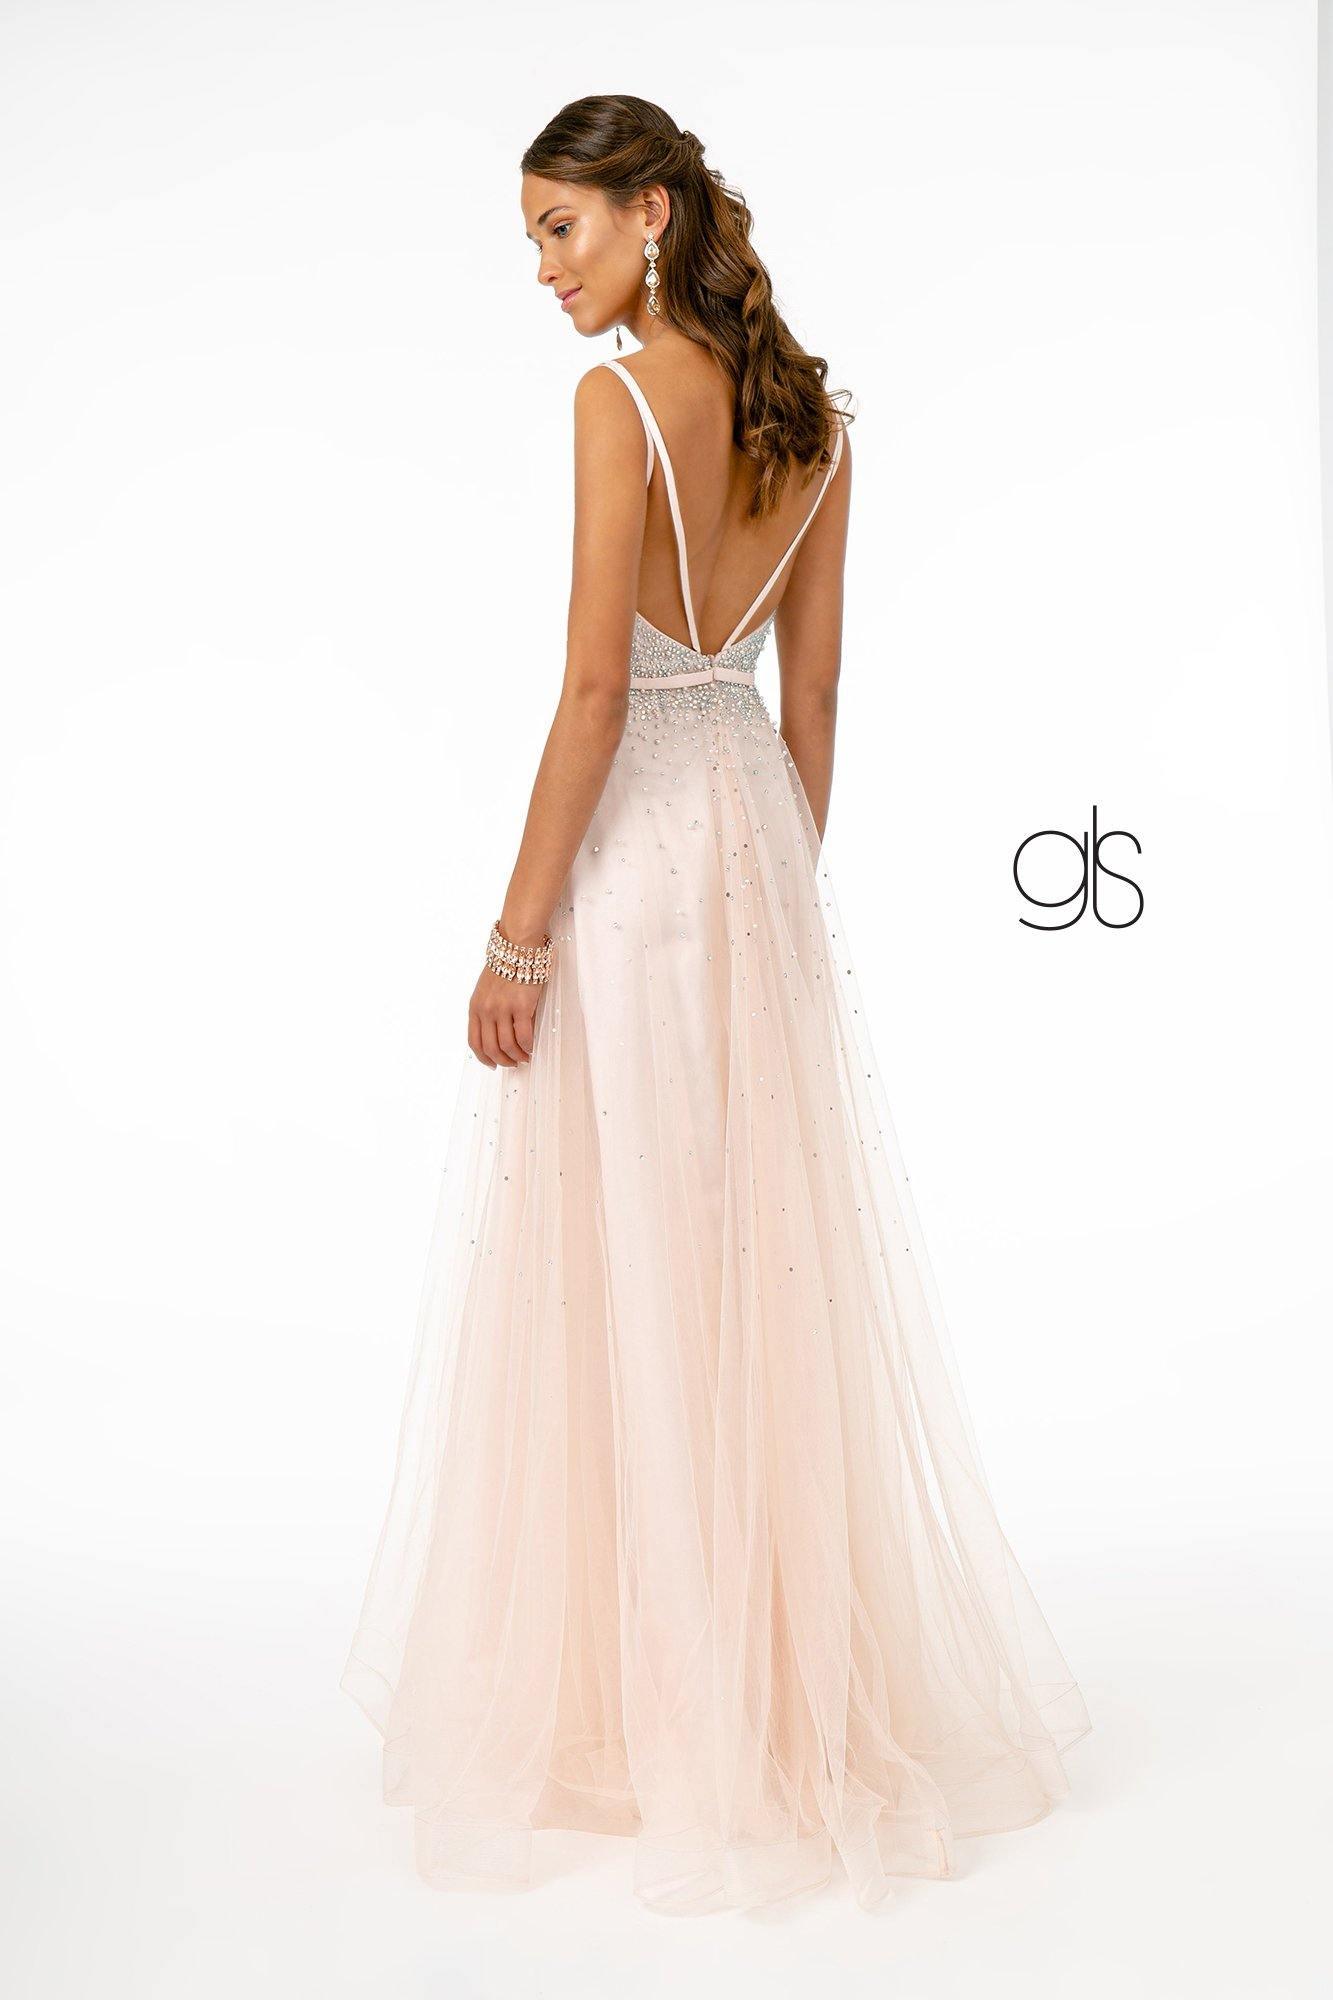 Jewel Embellished Bodice MeshLong Prom Dress Sale - The Dress Outlet